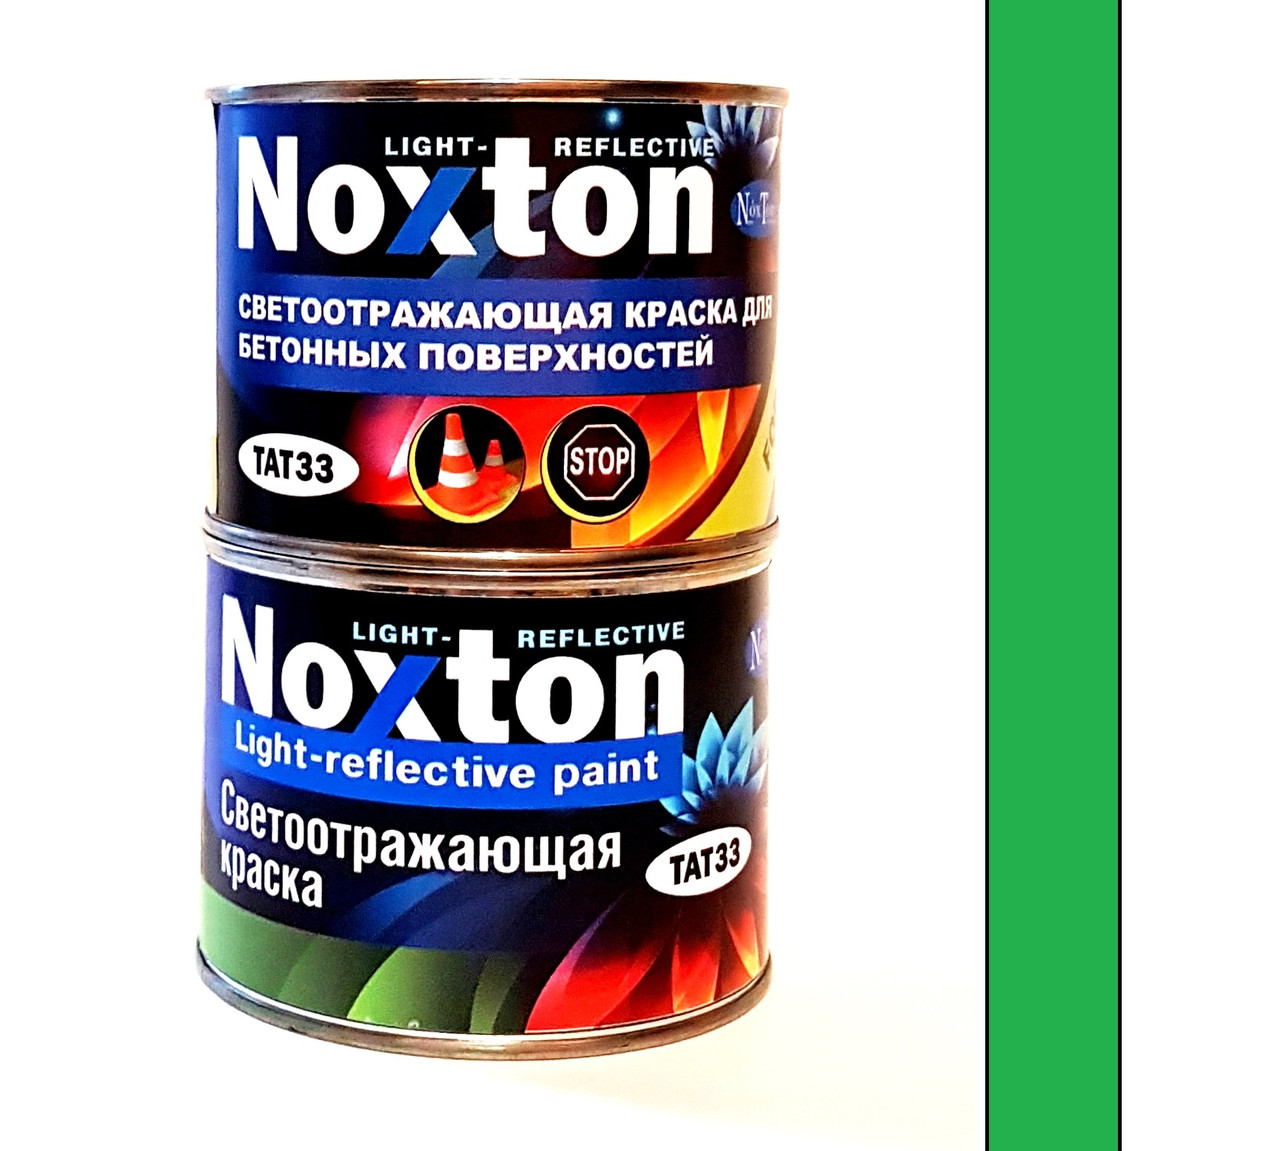 Светоотражающая краска для бетона и асфальта Noxton Light-reflective 0